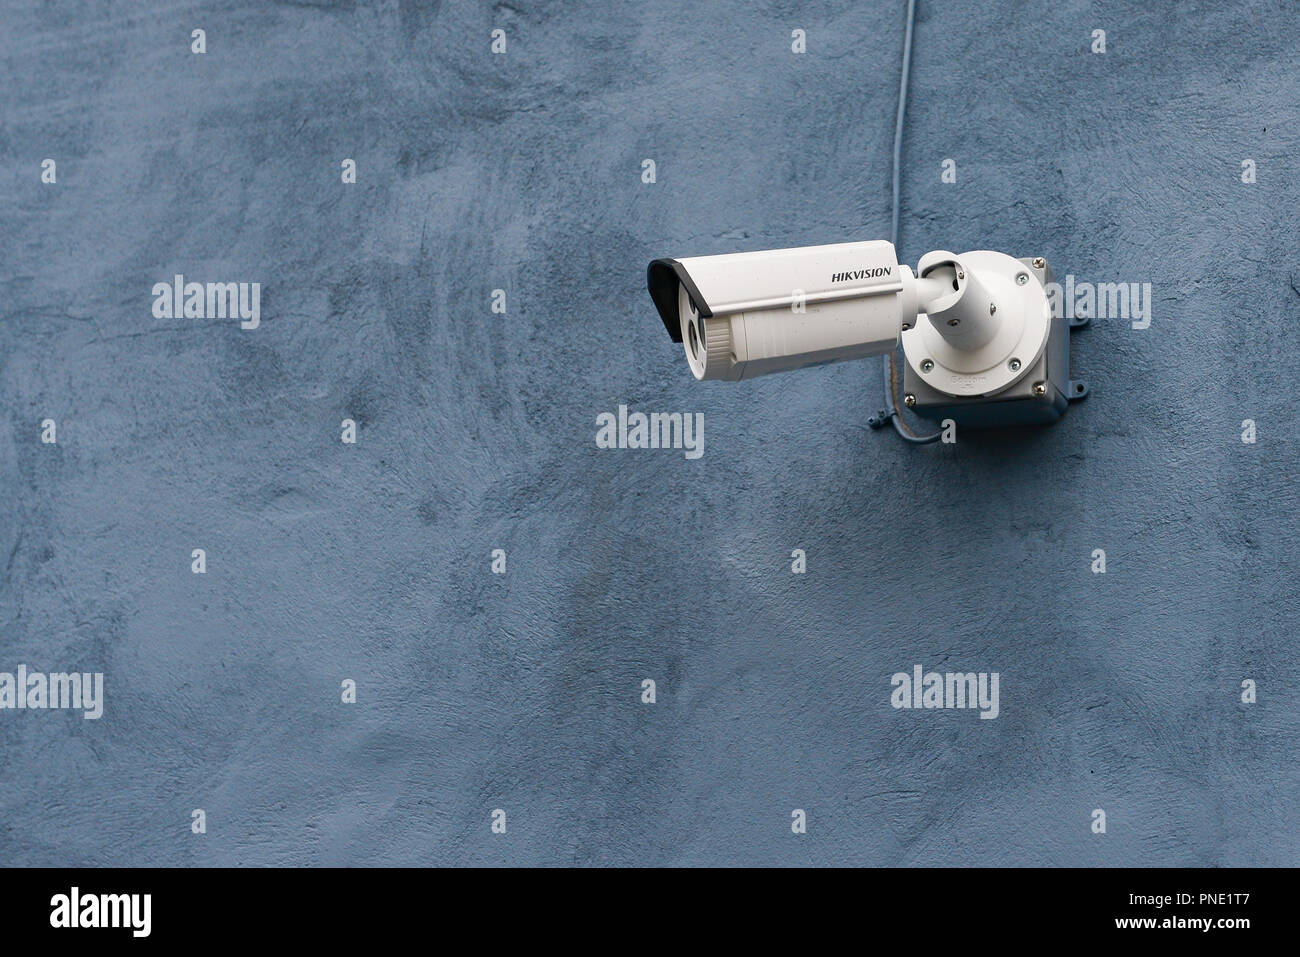 Une caméra de surveillance vidéo Hikvision monté sur un mur extérieur d'un  bâtiment Photo Stock - Alamy